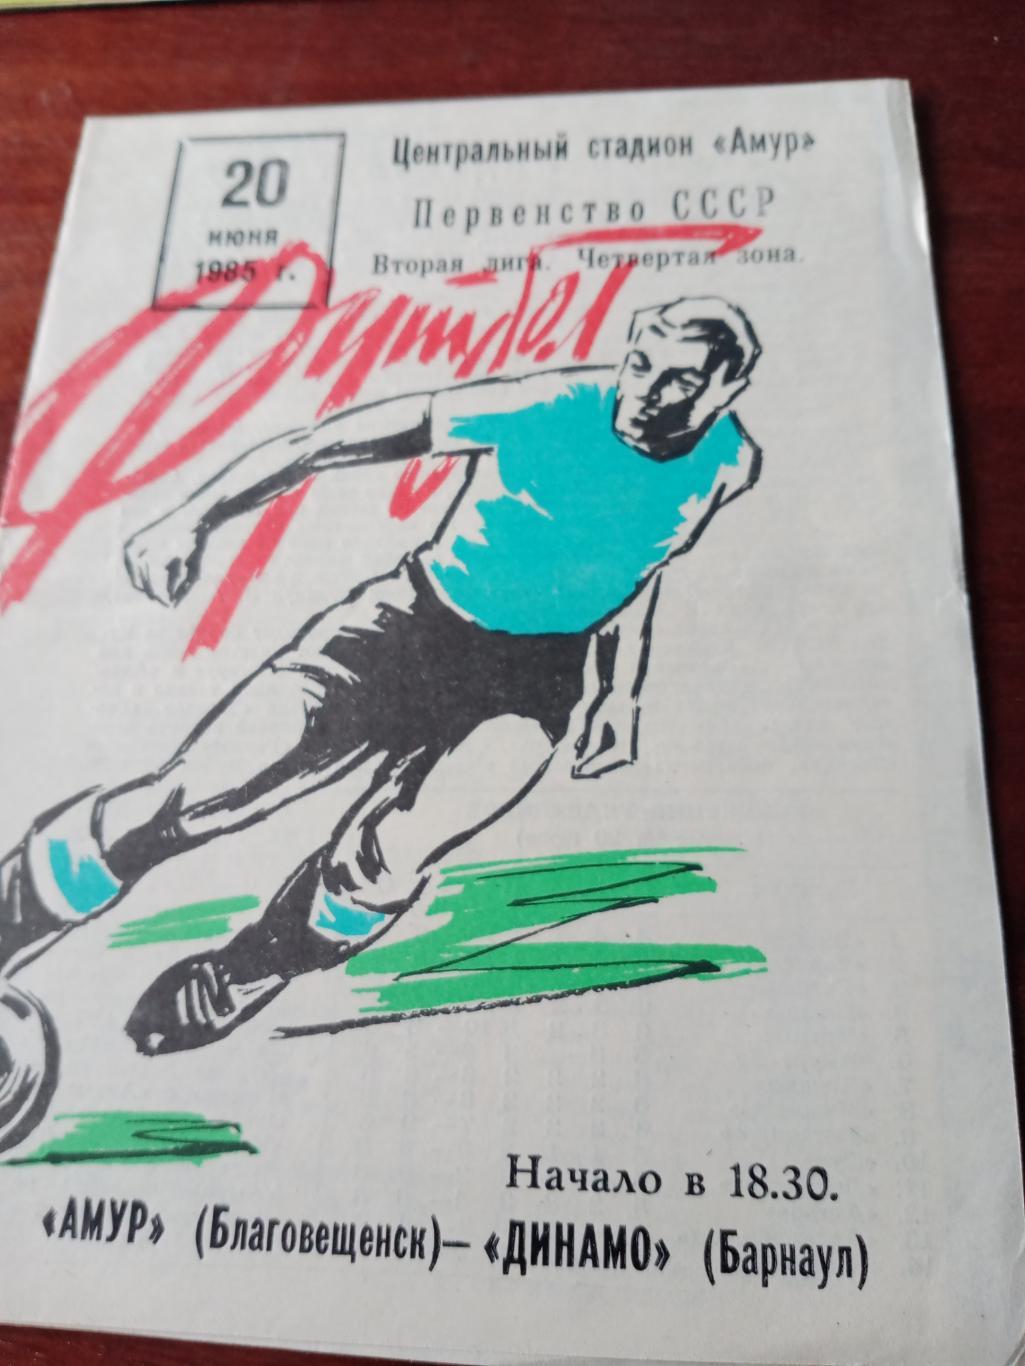 Амур Благовещенск - Динамо Барнаул. 20 июня 1985 год